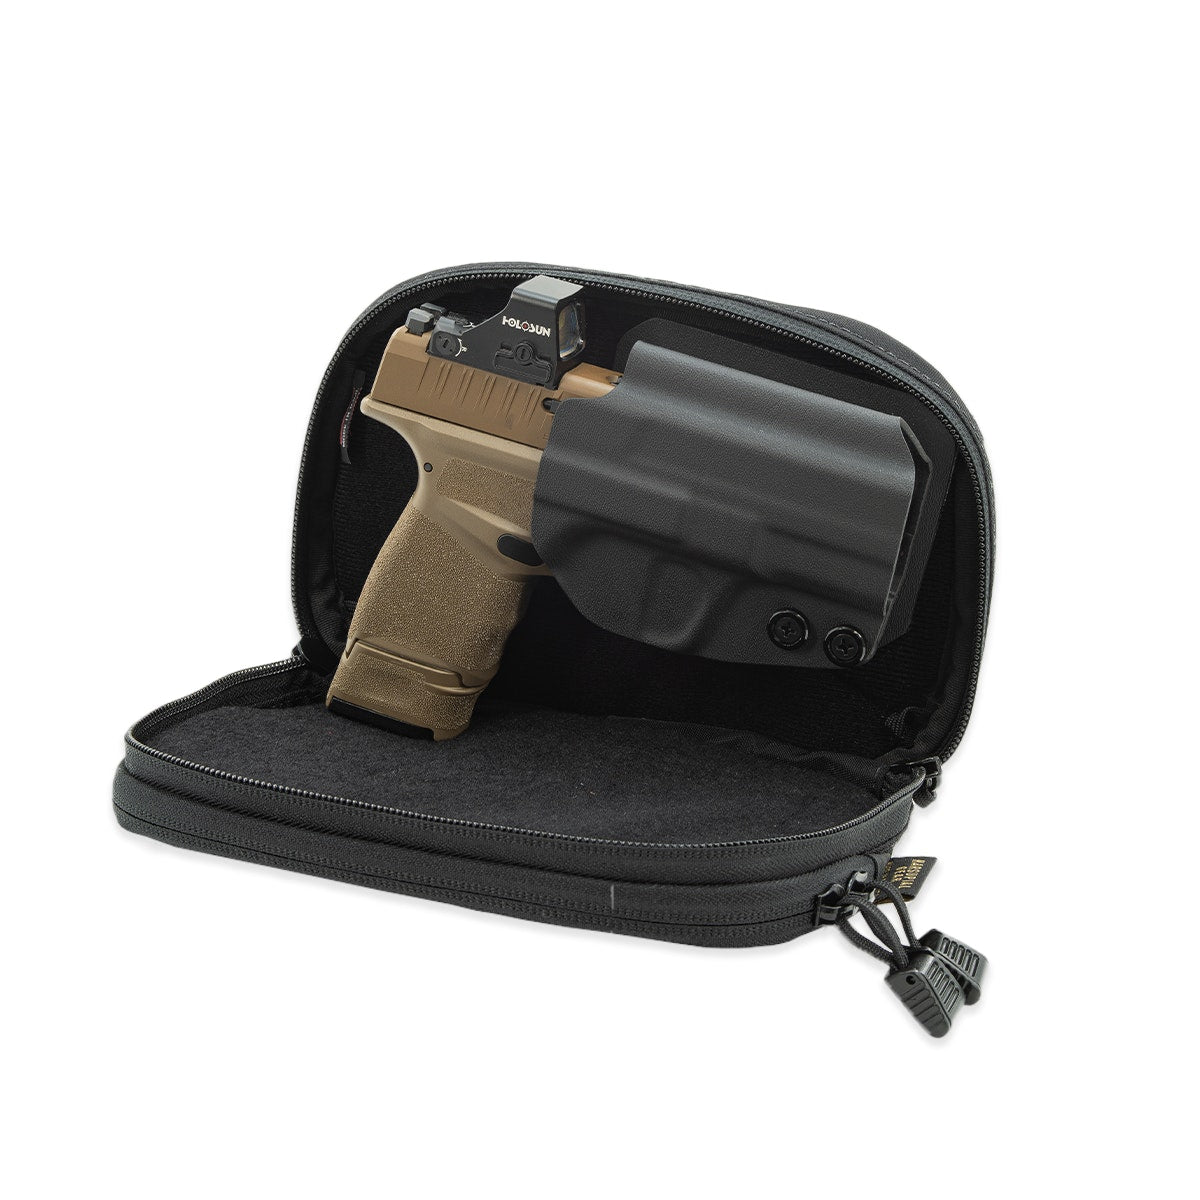  Gun Holsters - Gun Holsters / Gun Holsters, Cases